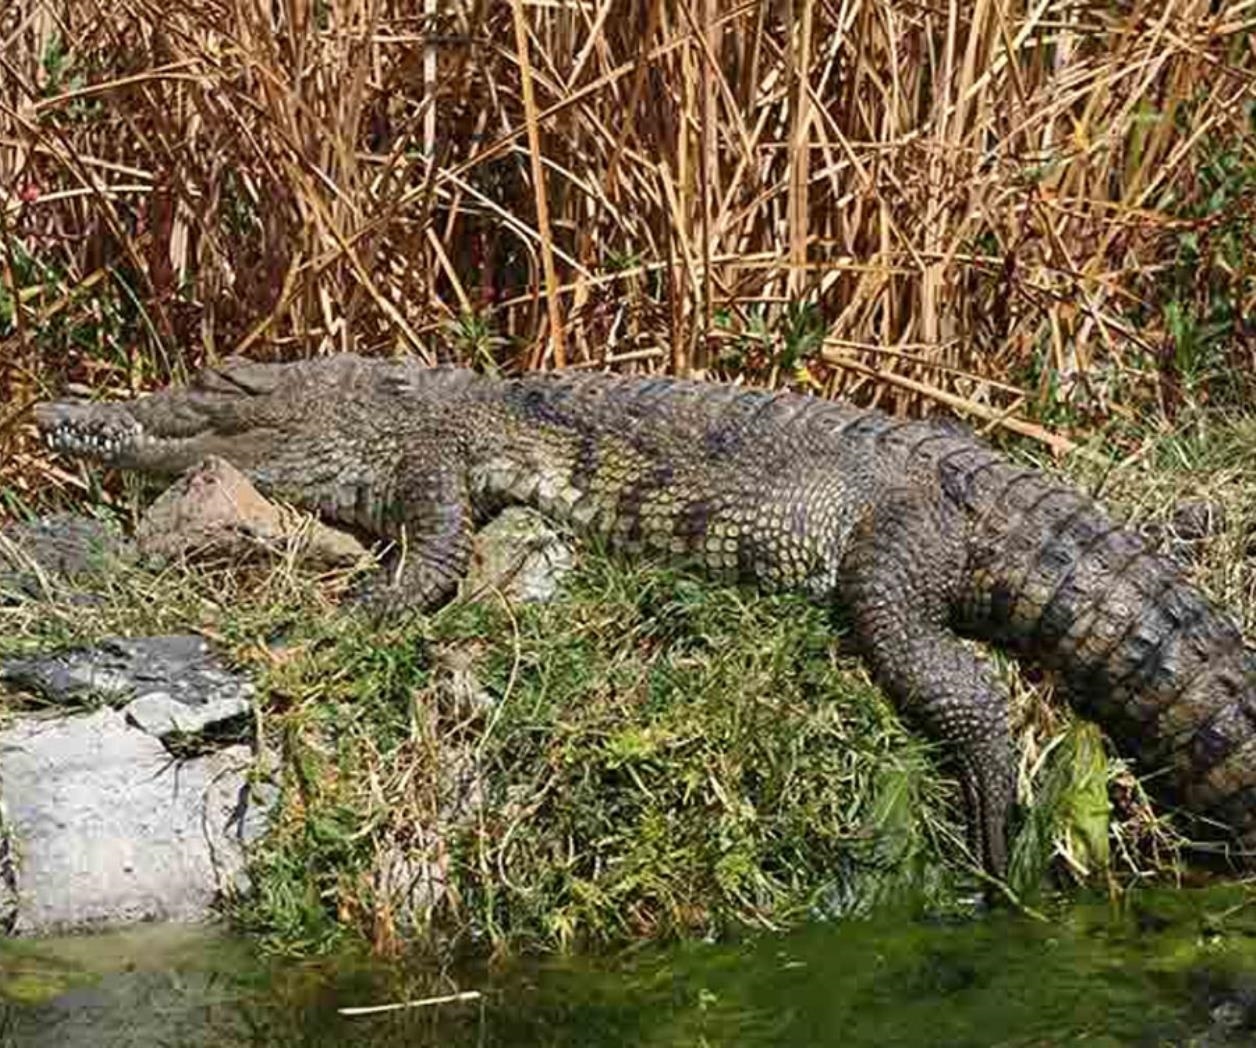 Profepa asegura siete ejemplares de cocodrilo en zoológico de Mérida